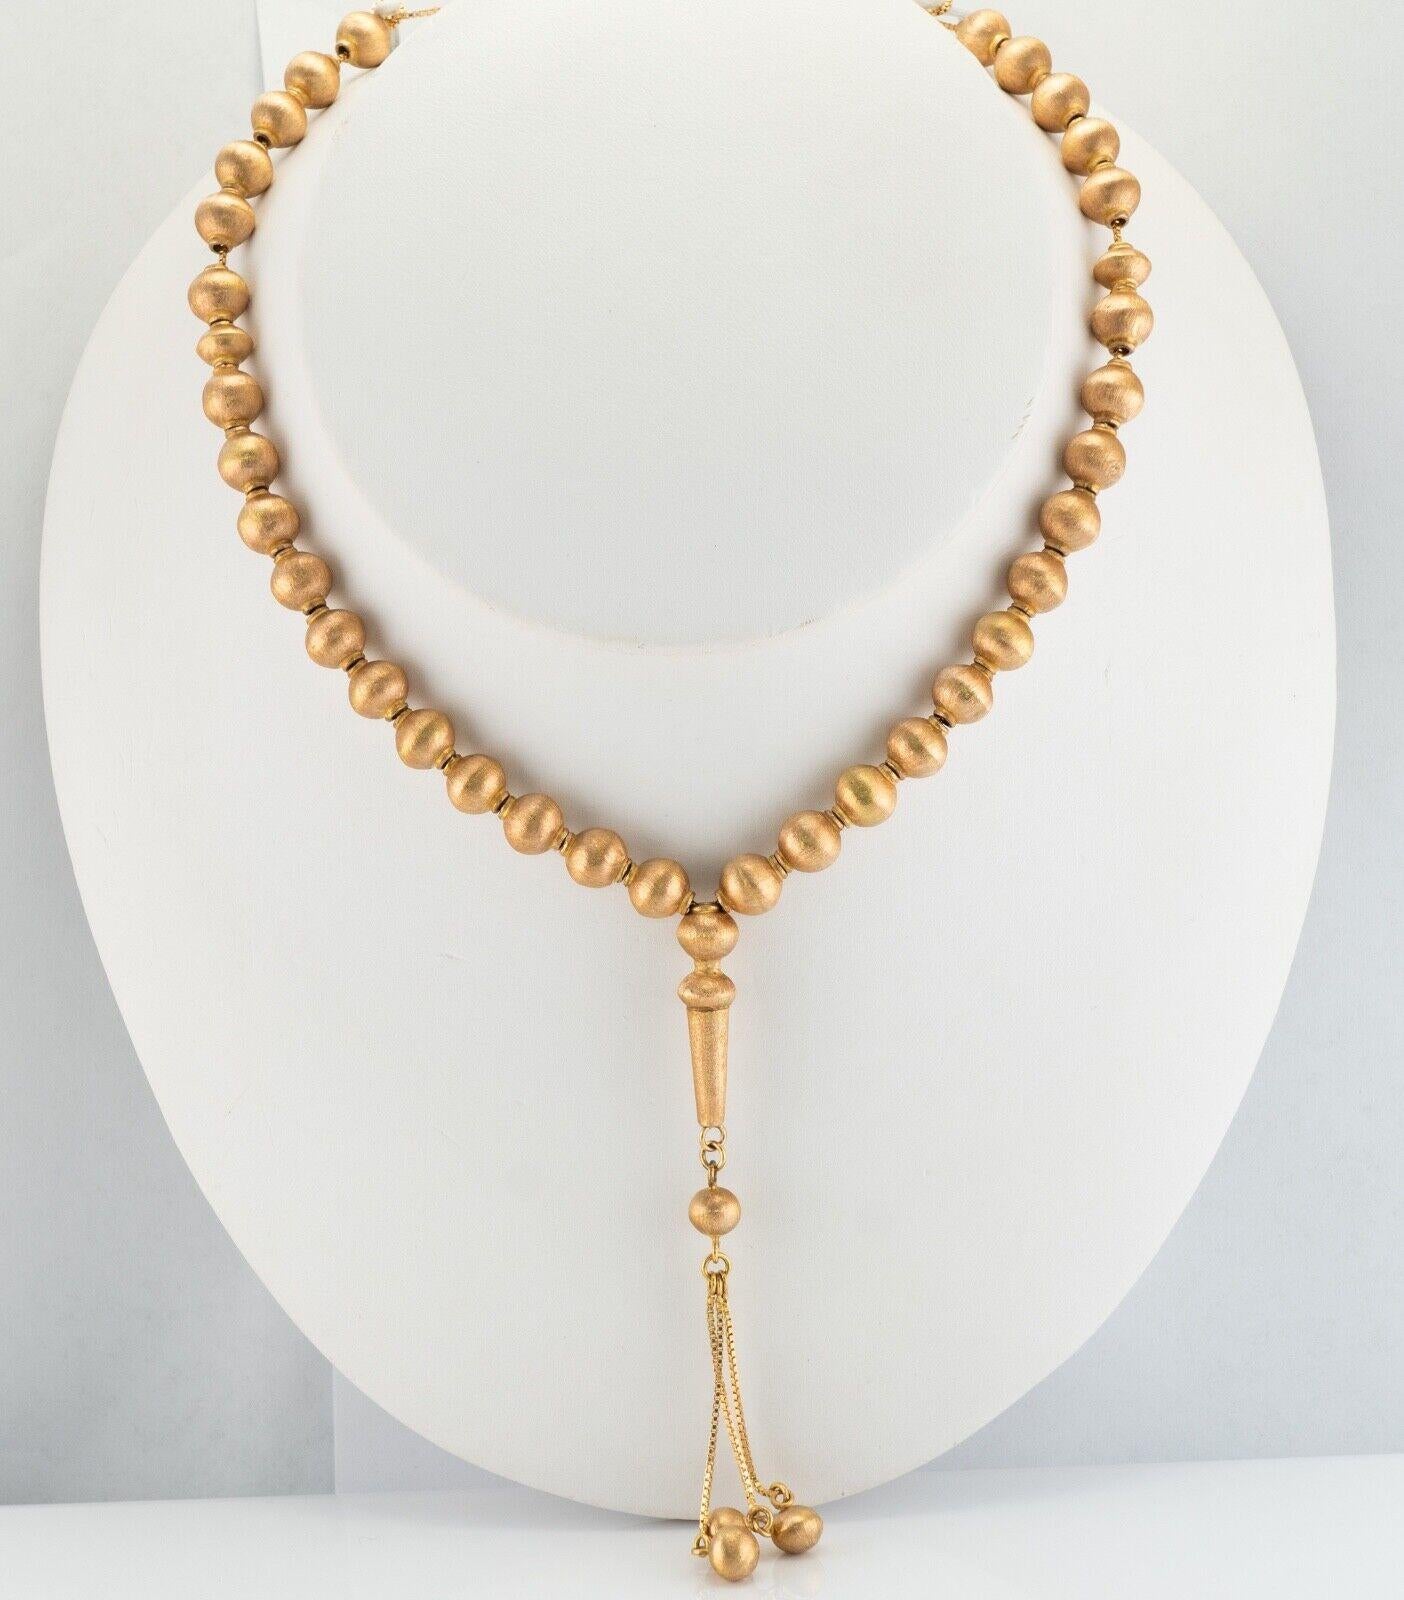 14K Gold Perlen Halskette Gold Perlen Quasten

Diese sehr ungewöhnliche Vintage-Halskette ist fein aus massivem 14-karätigem Gelbgold gefertigt. Die Halskette besteht aus 36 goldenen Perlen und der untere Teil hat 5 weitere Perlen. Die Perlen messen